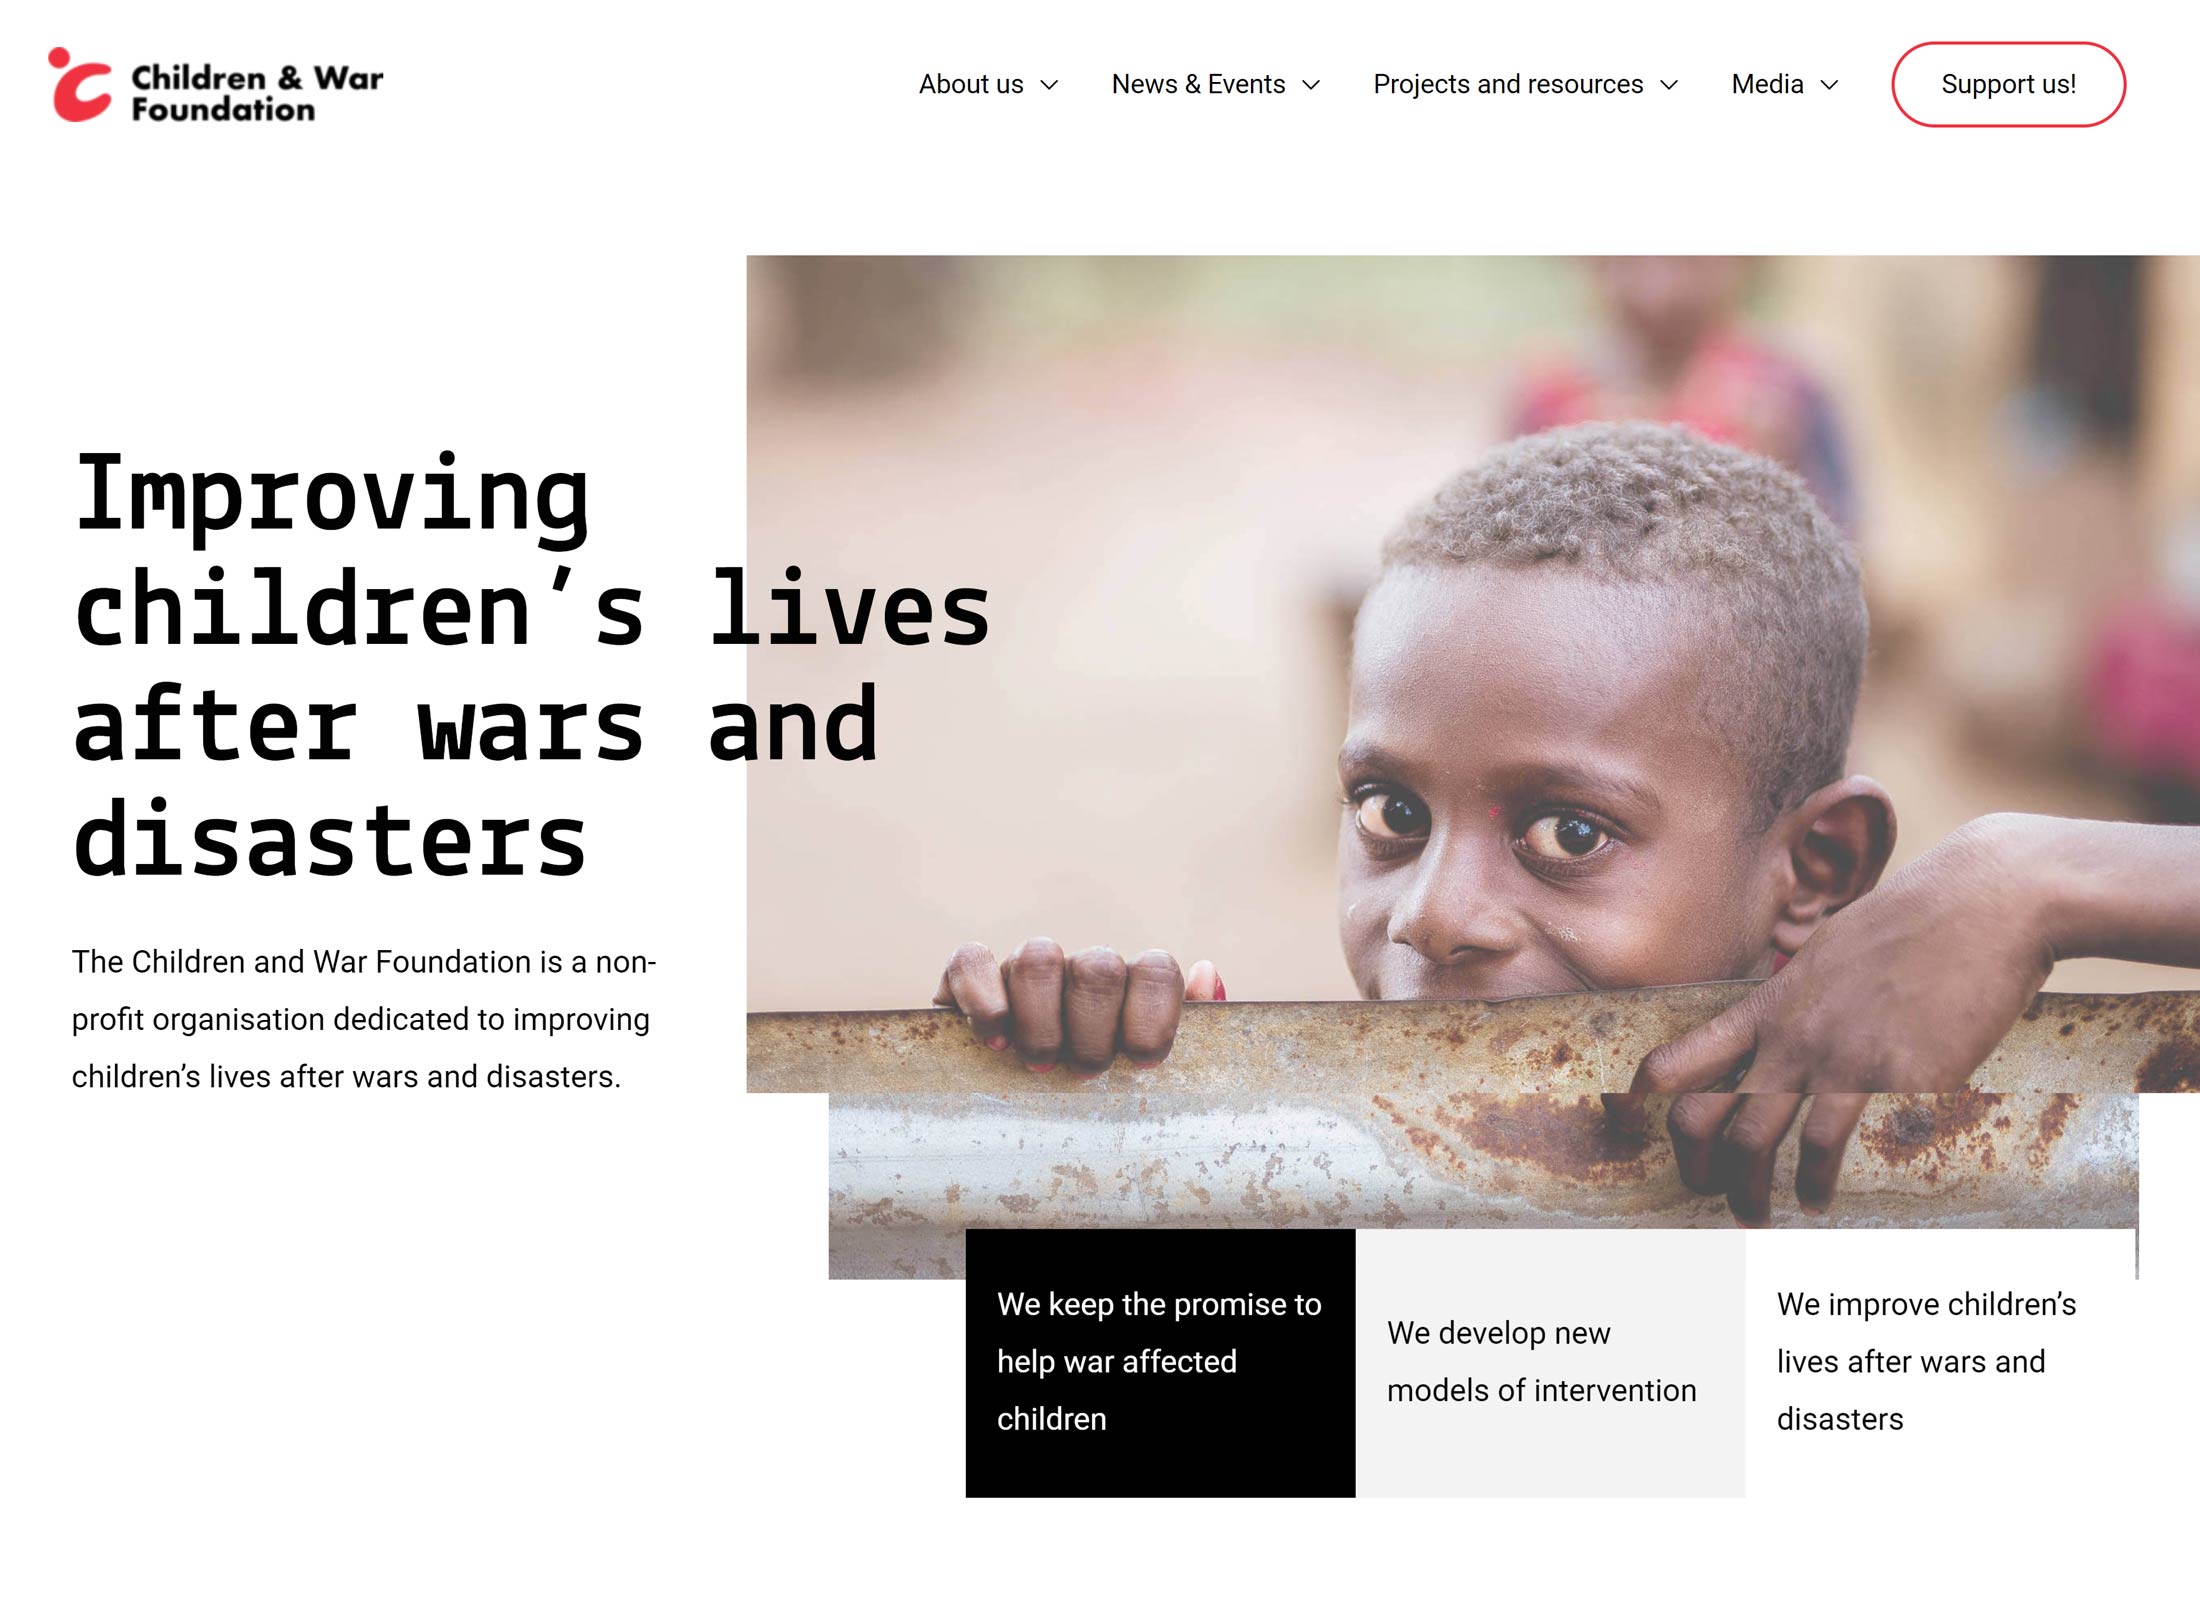 Children and War Foundation